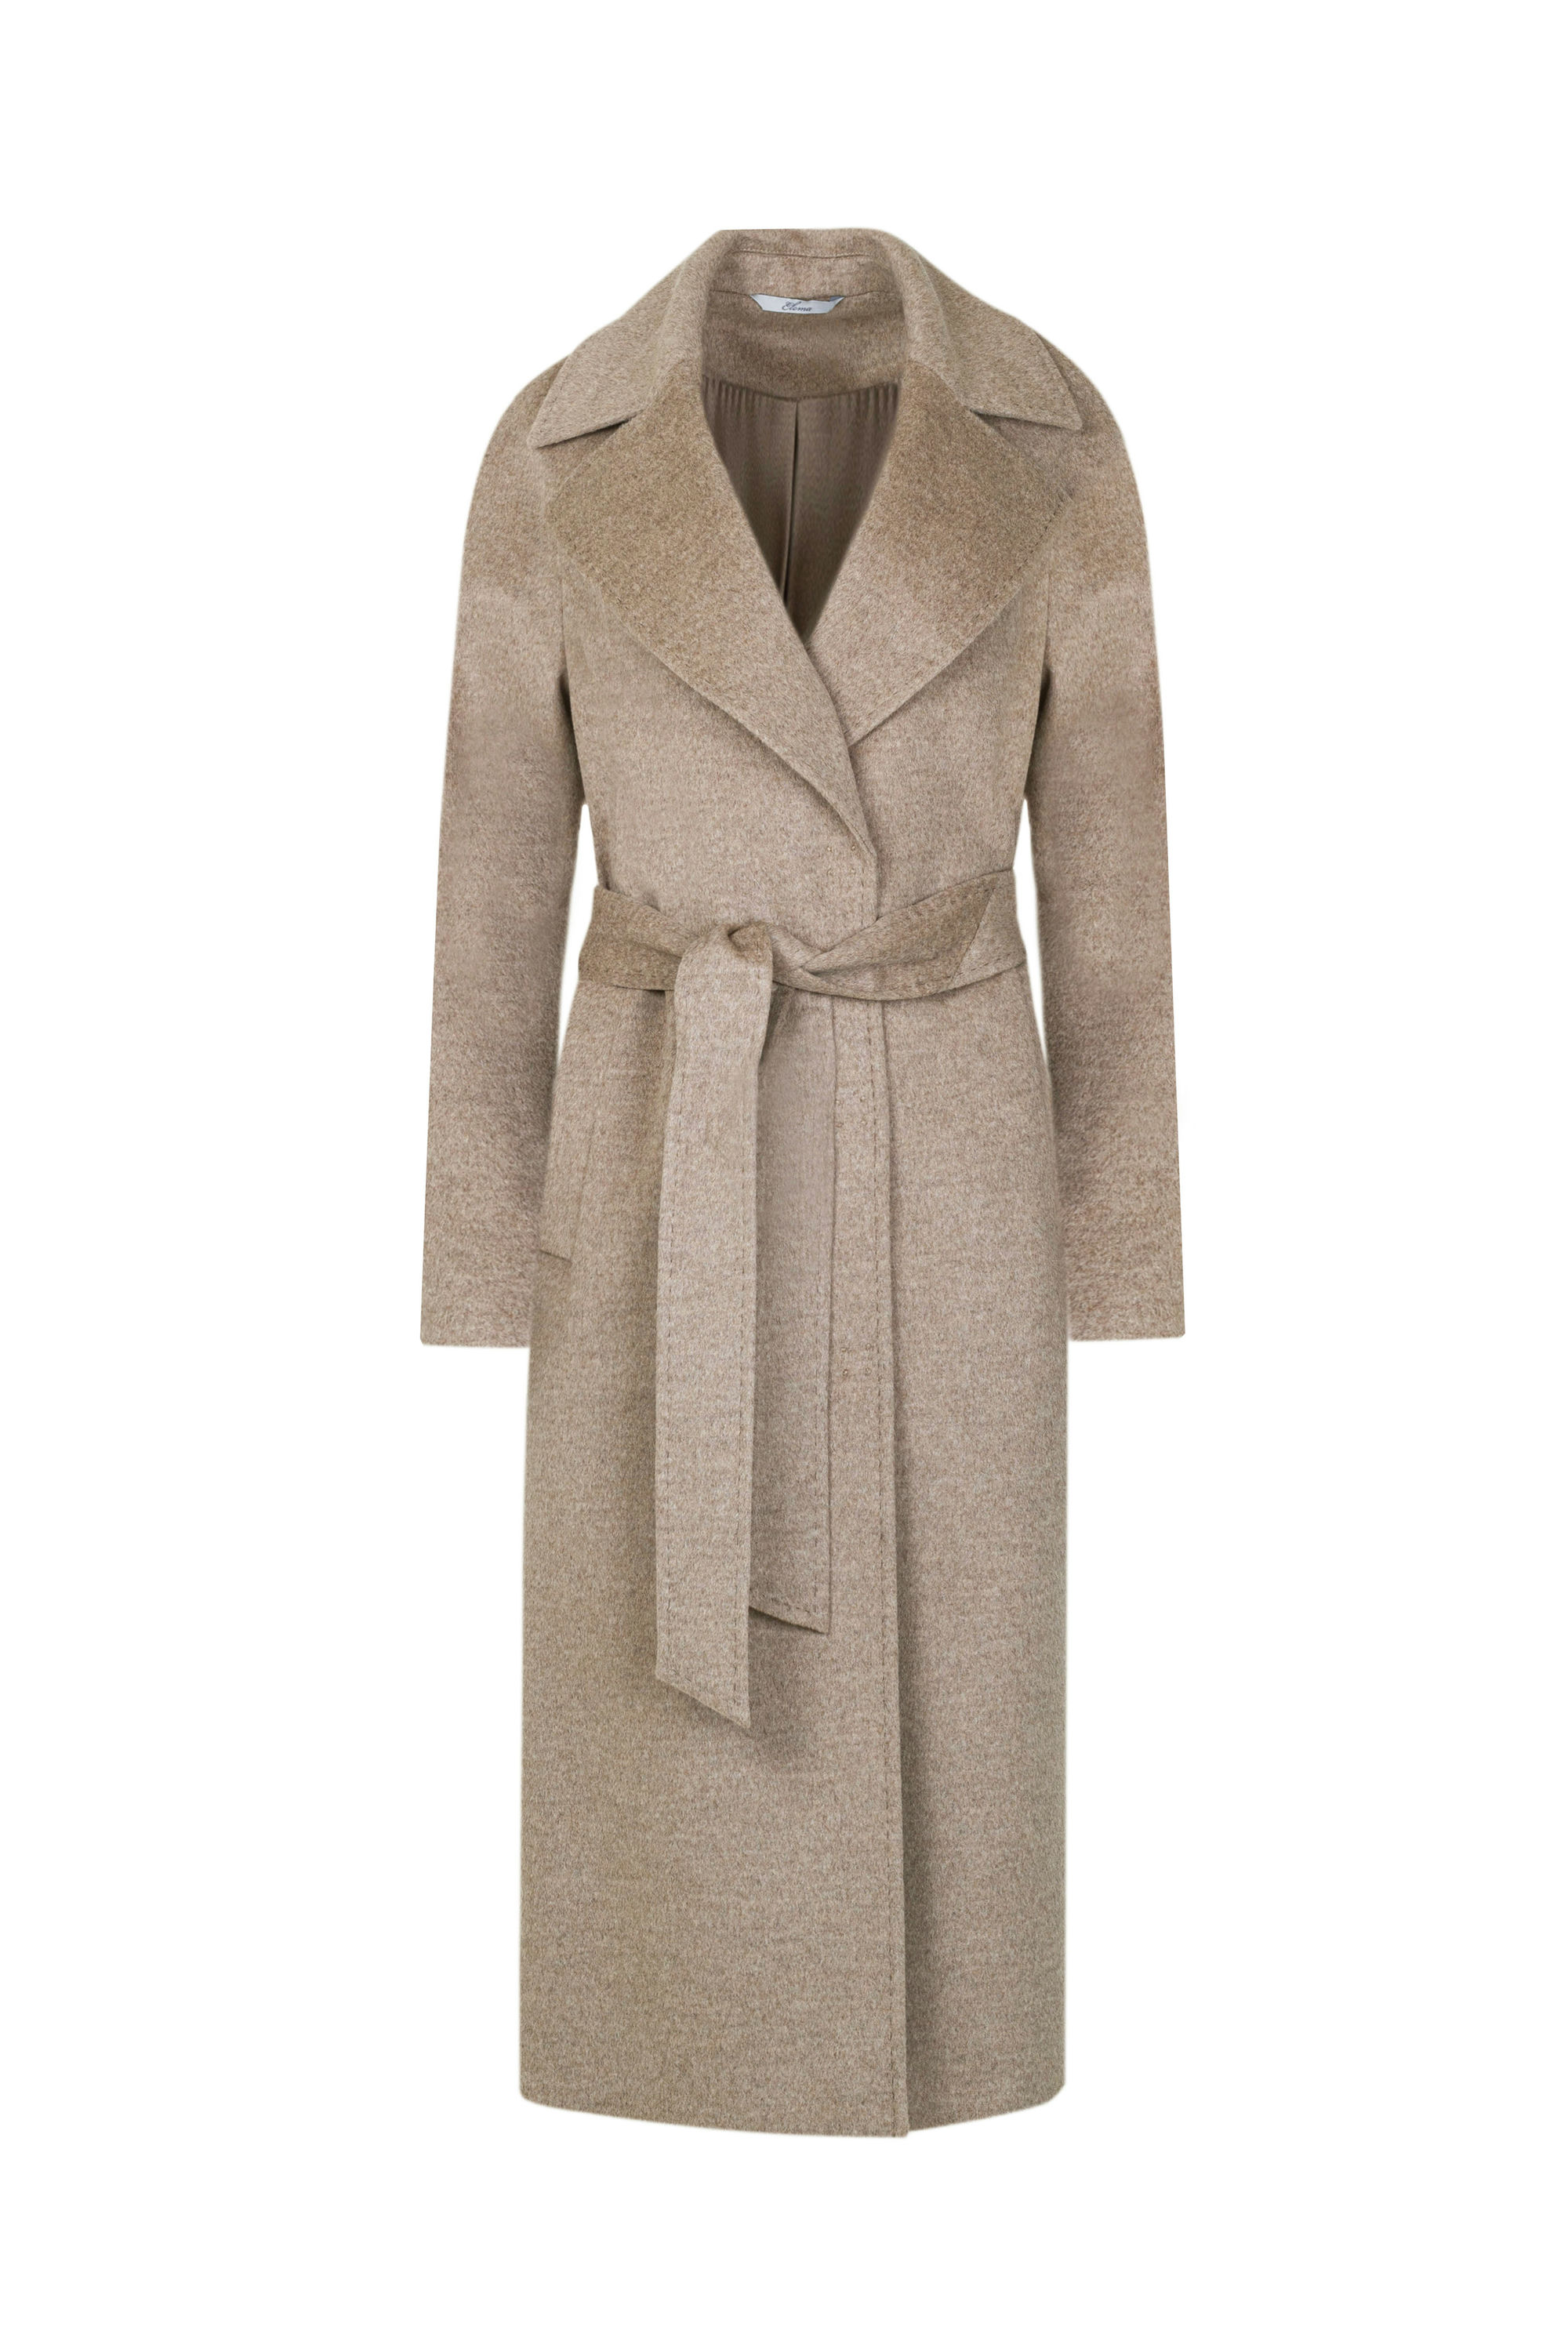 Пальто женское демисезонное 1-12542-1. Фото 7.